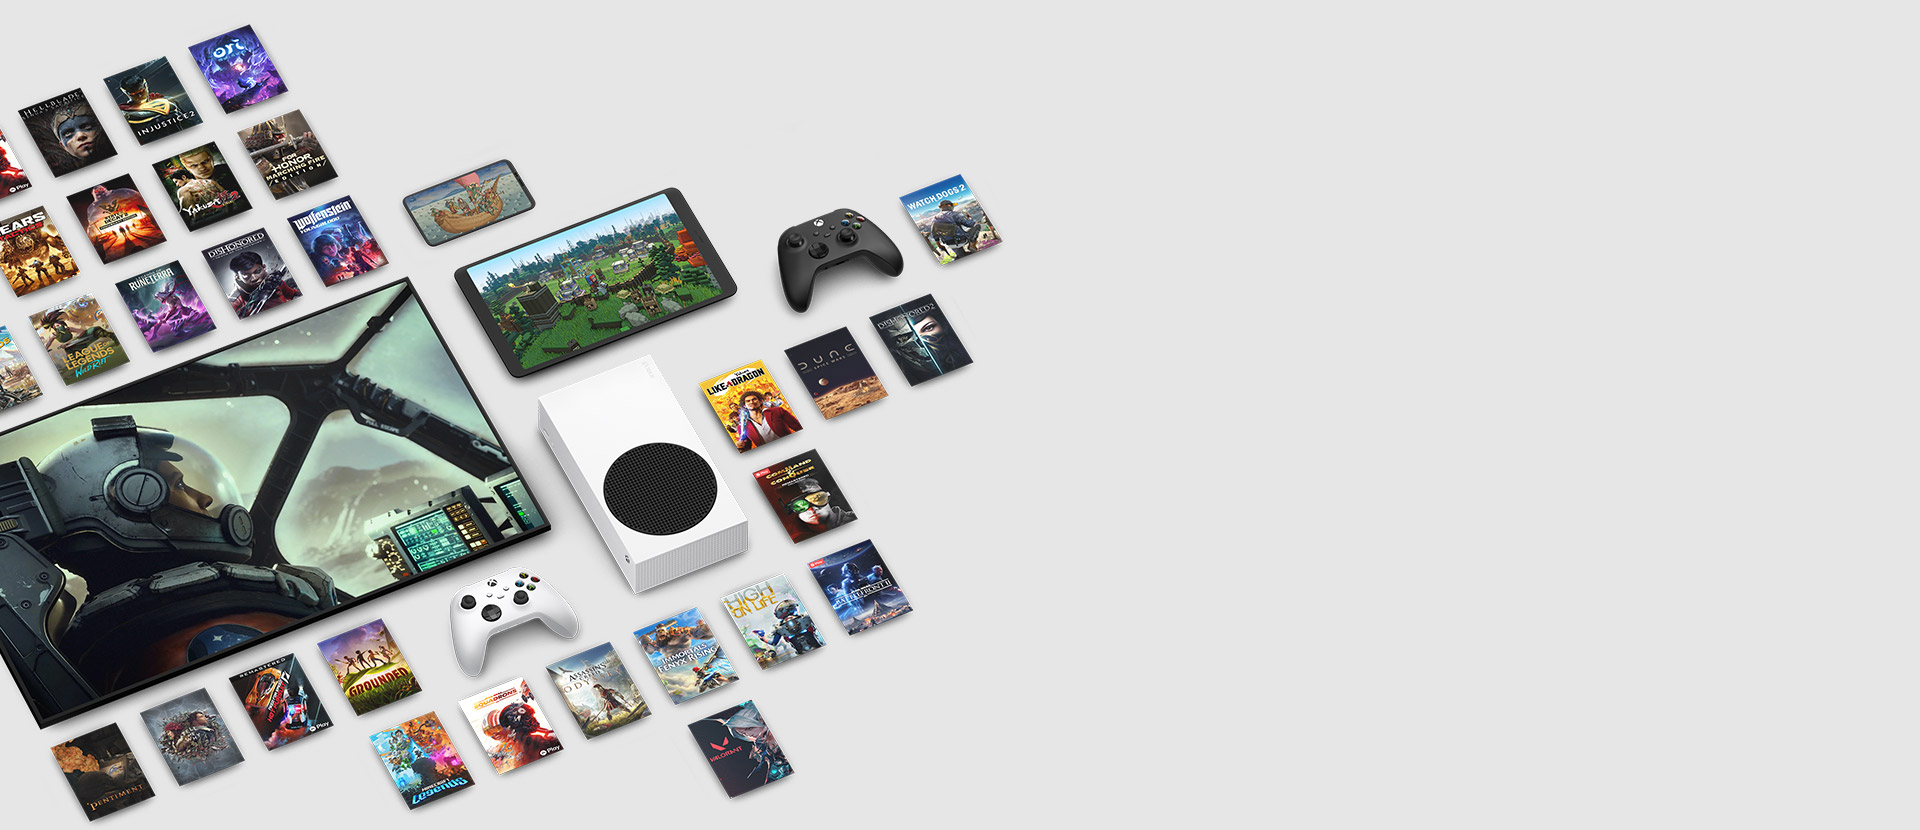 Game-illustraties van meerdere games die nu beschikbaar zijn met Xbox Game Pass Ultimate rond meerdere apparaten, waaronder een console, mobiele telefoon, tablet, smart-tv en controllers.